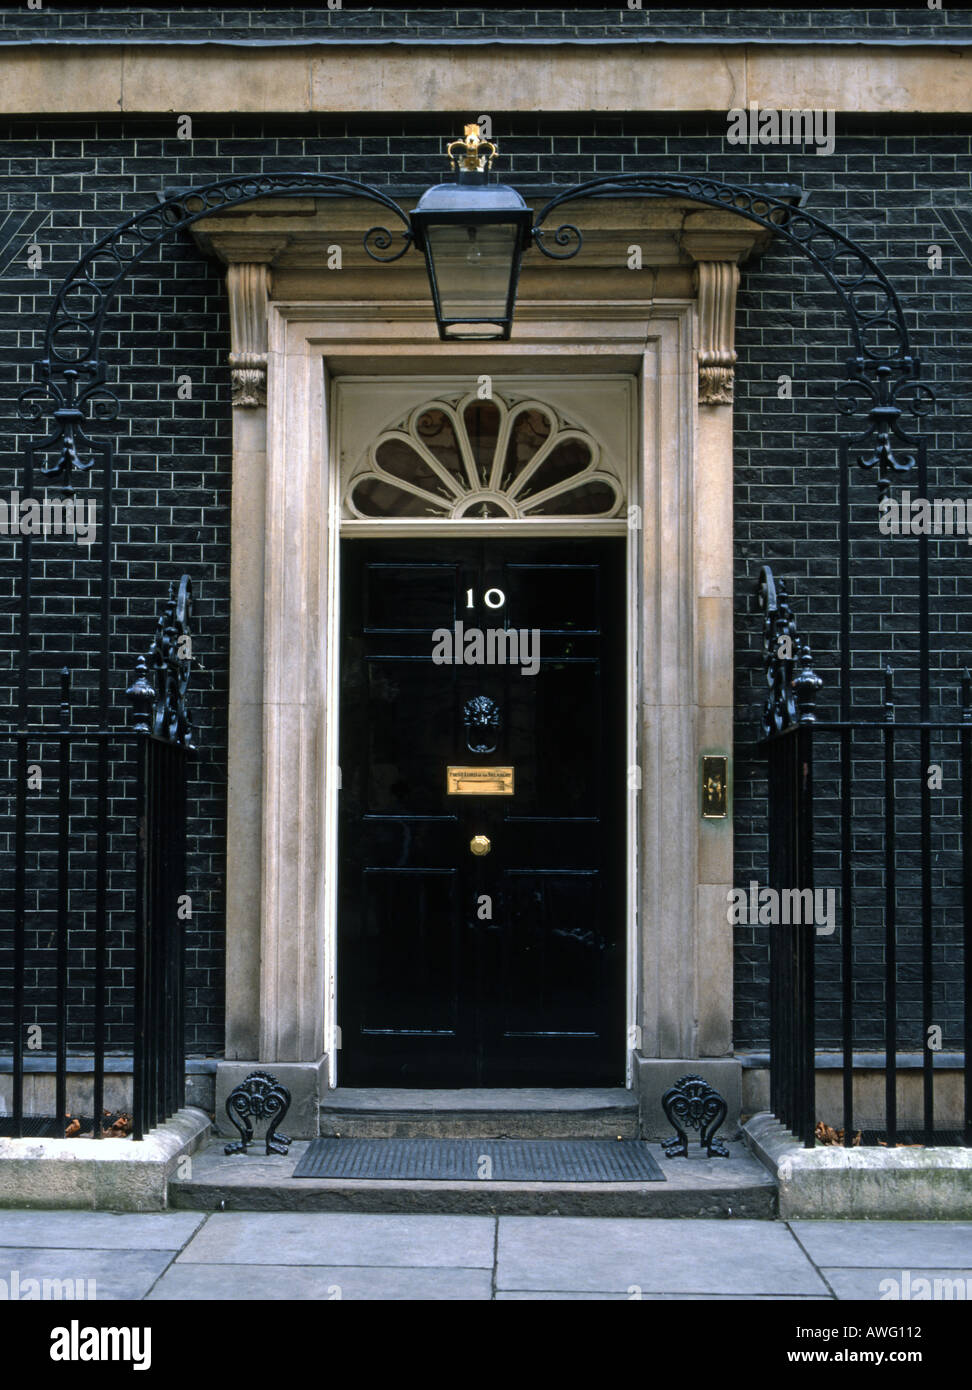 Großbritanniens berühmtesten Haustür 10 Downing Street. 10 Downing St ist der Londoner Haus des Premierministers des Vereinigten Königreichs. Berühmte Haustür. Stockfoto